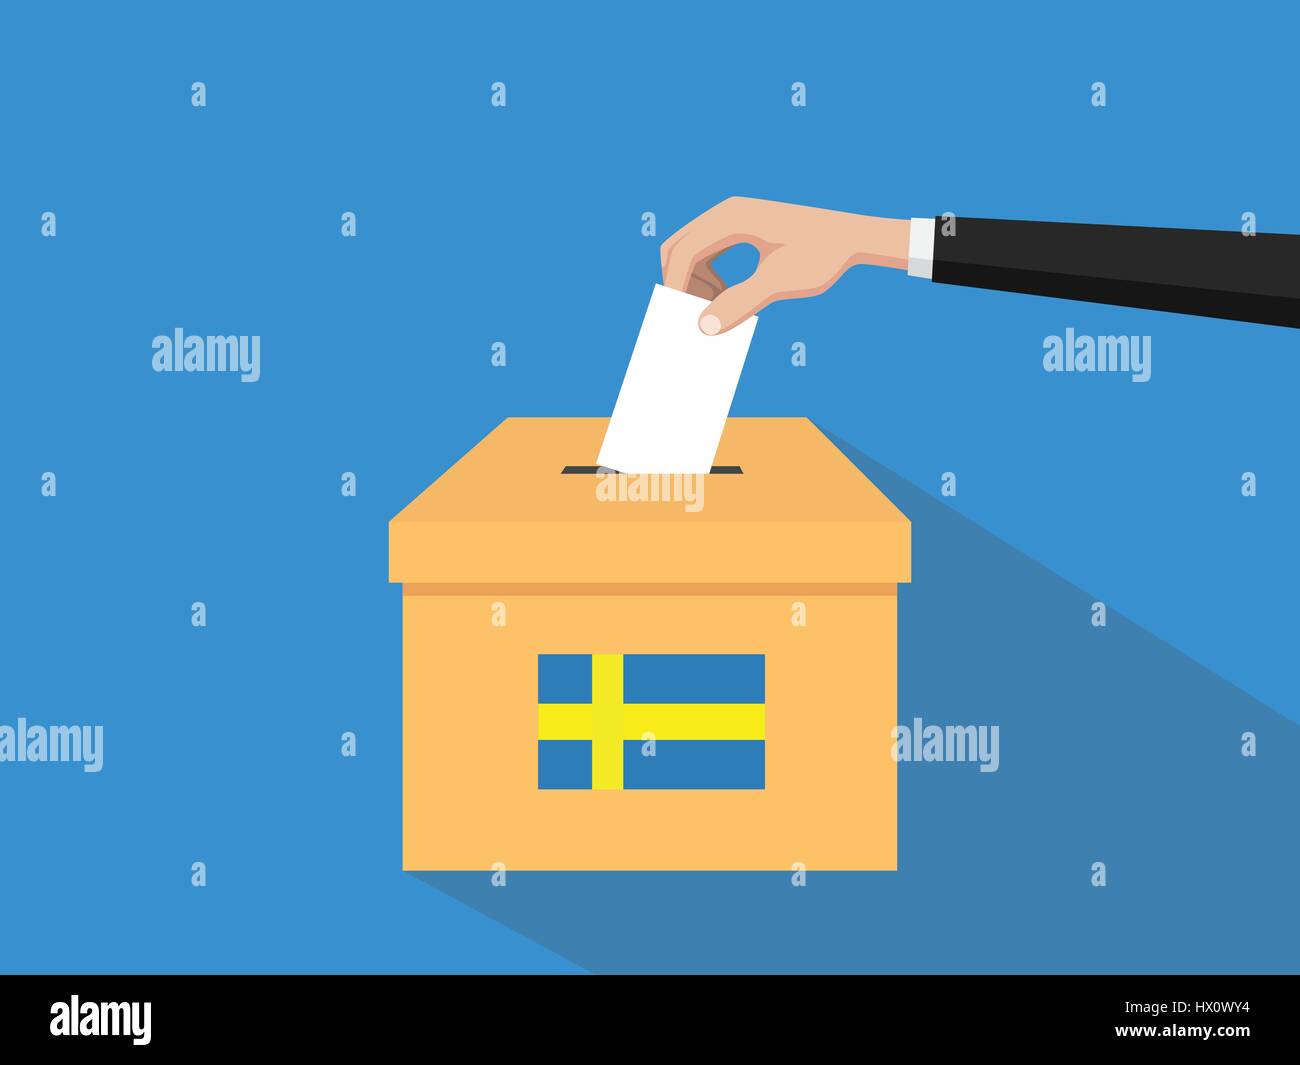 La Suède vote élection concept illustration avec les gens voter votes donne la main à insérer avec ombre portée de l'élection des boîtes style plat Illustration de Vecteur